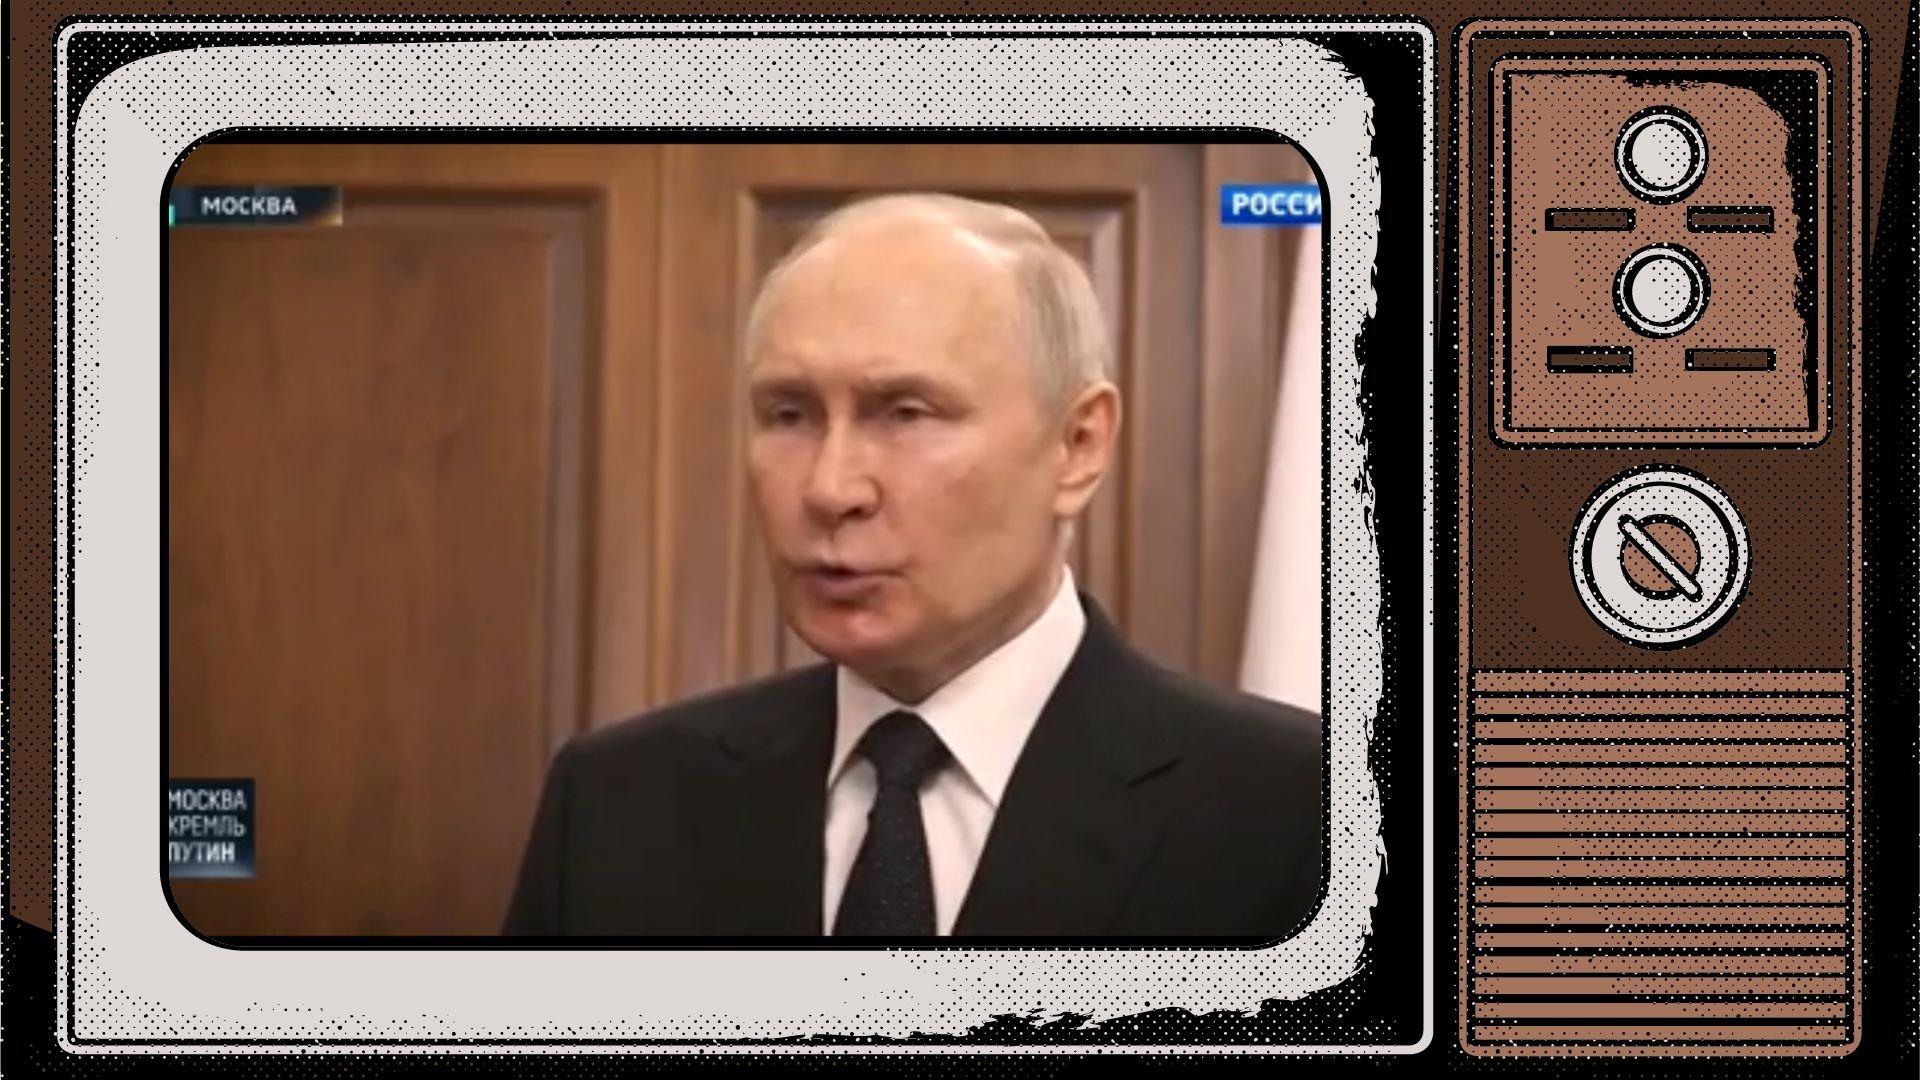 Grafika: w ramce starego telewizora przemawiający Putin. Usta układa w dziubek, jakby dmuchał